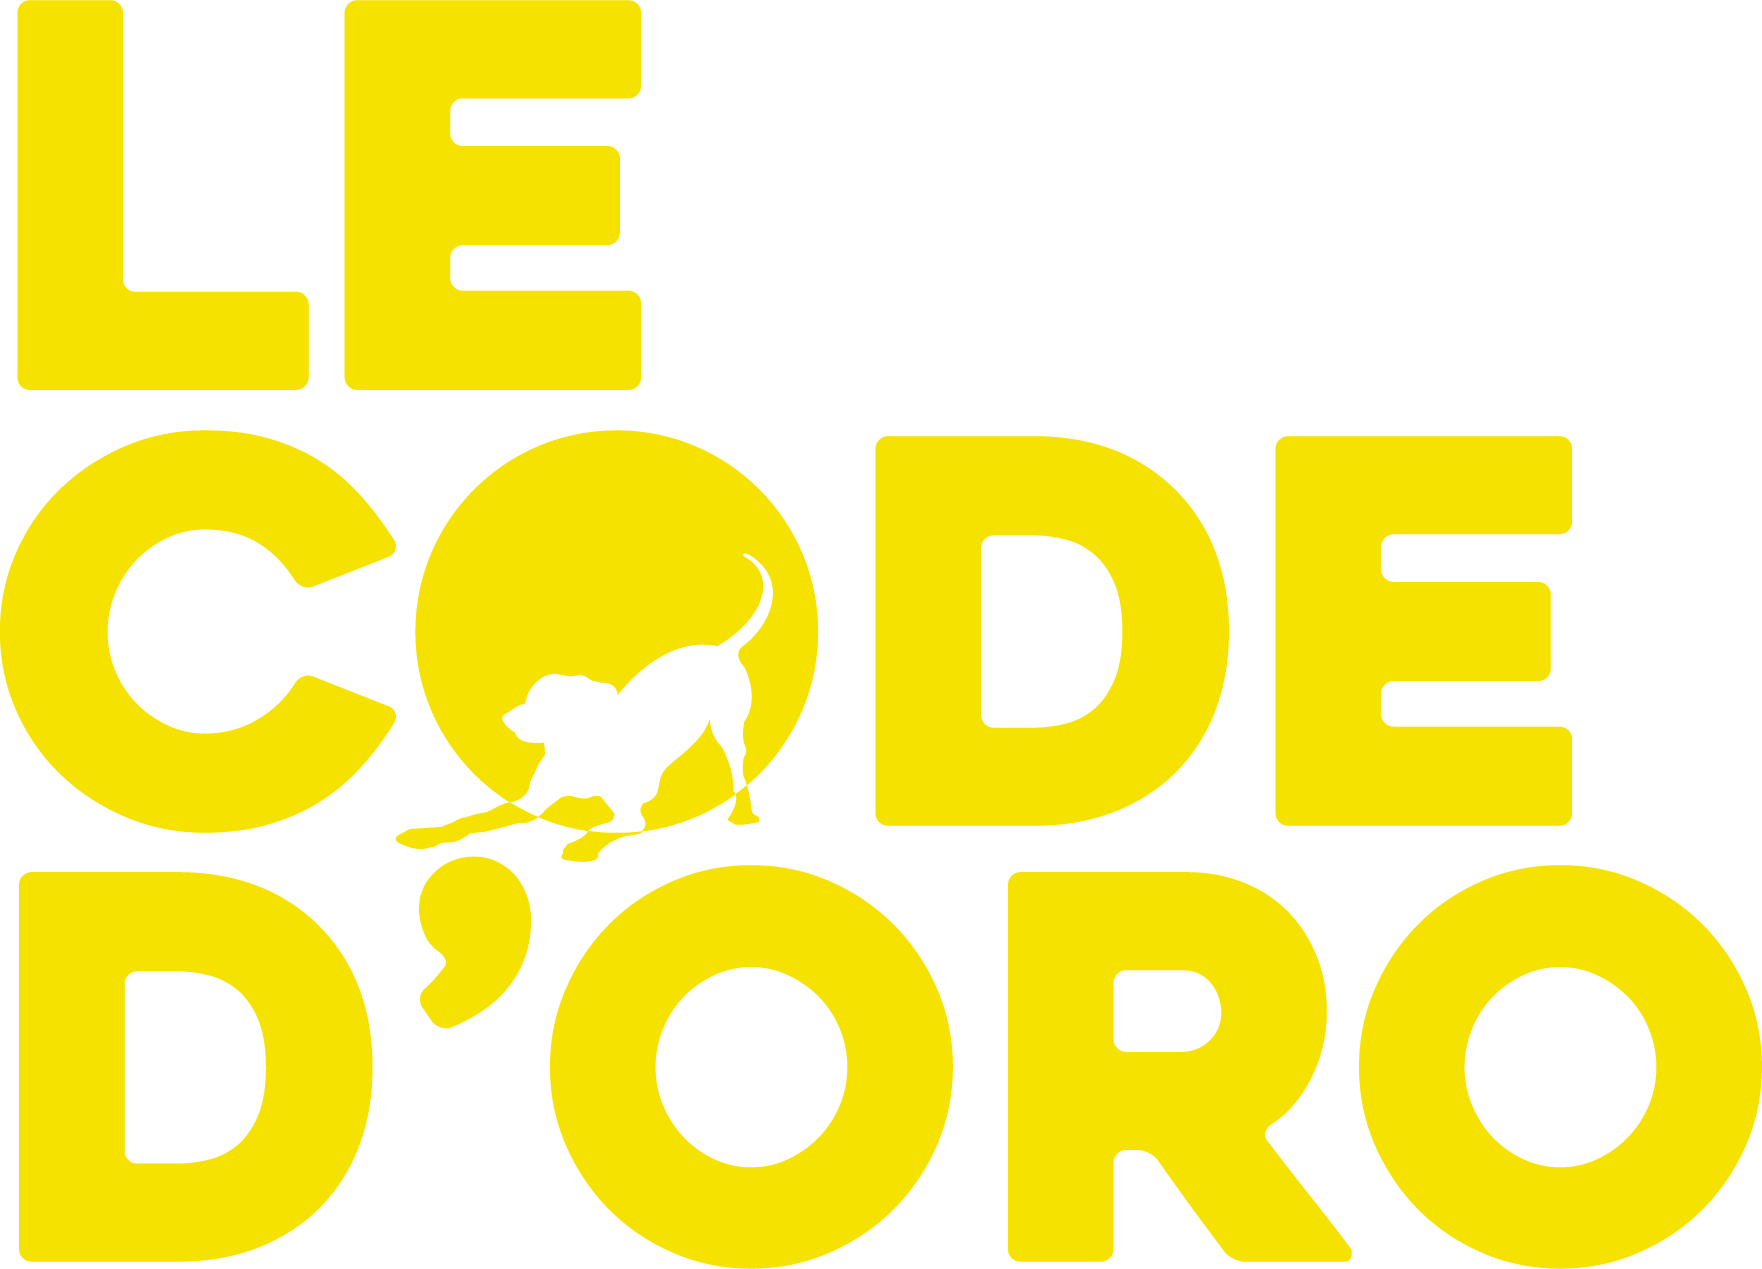 Le Code D'Oro